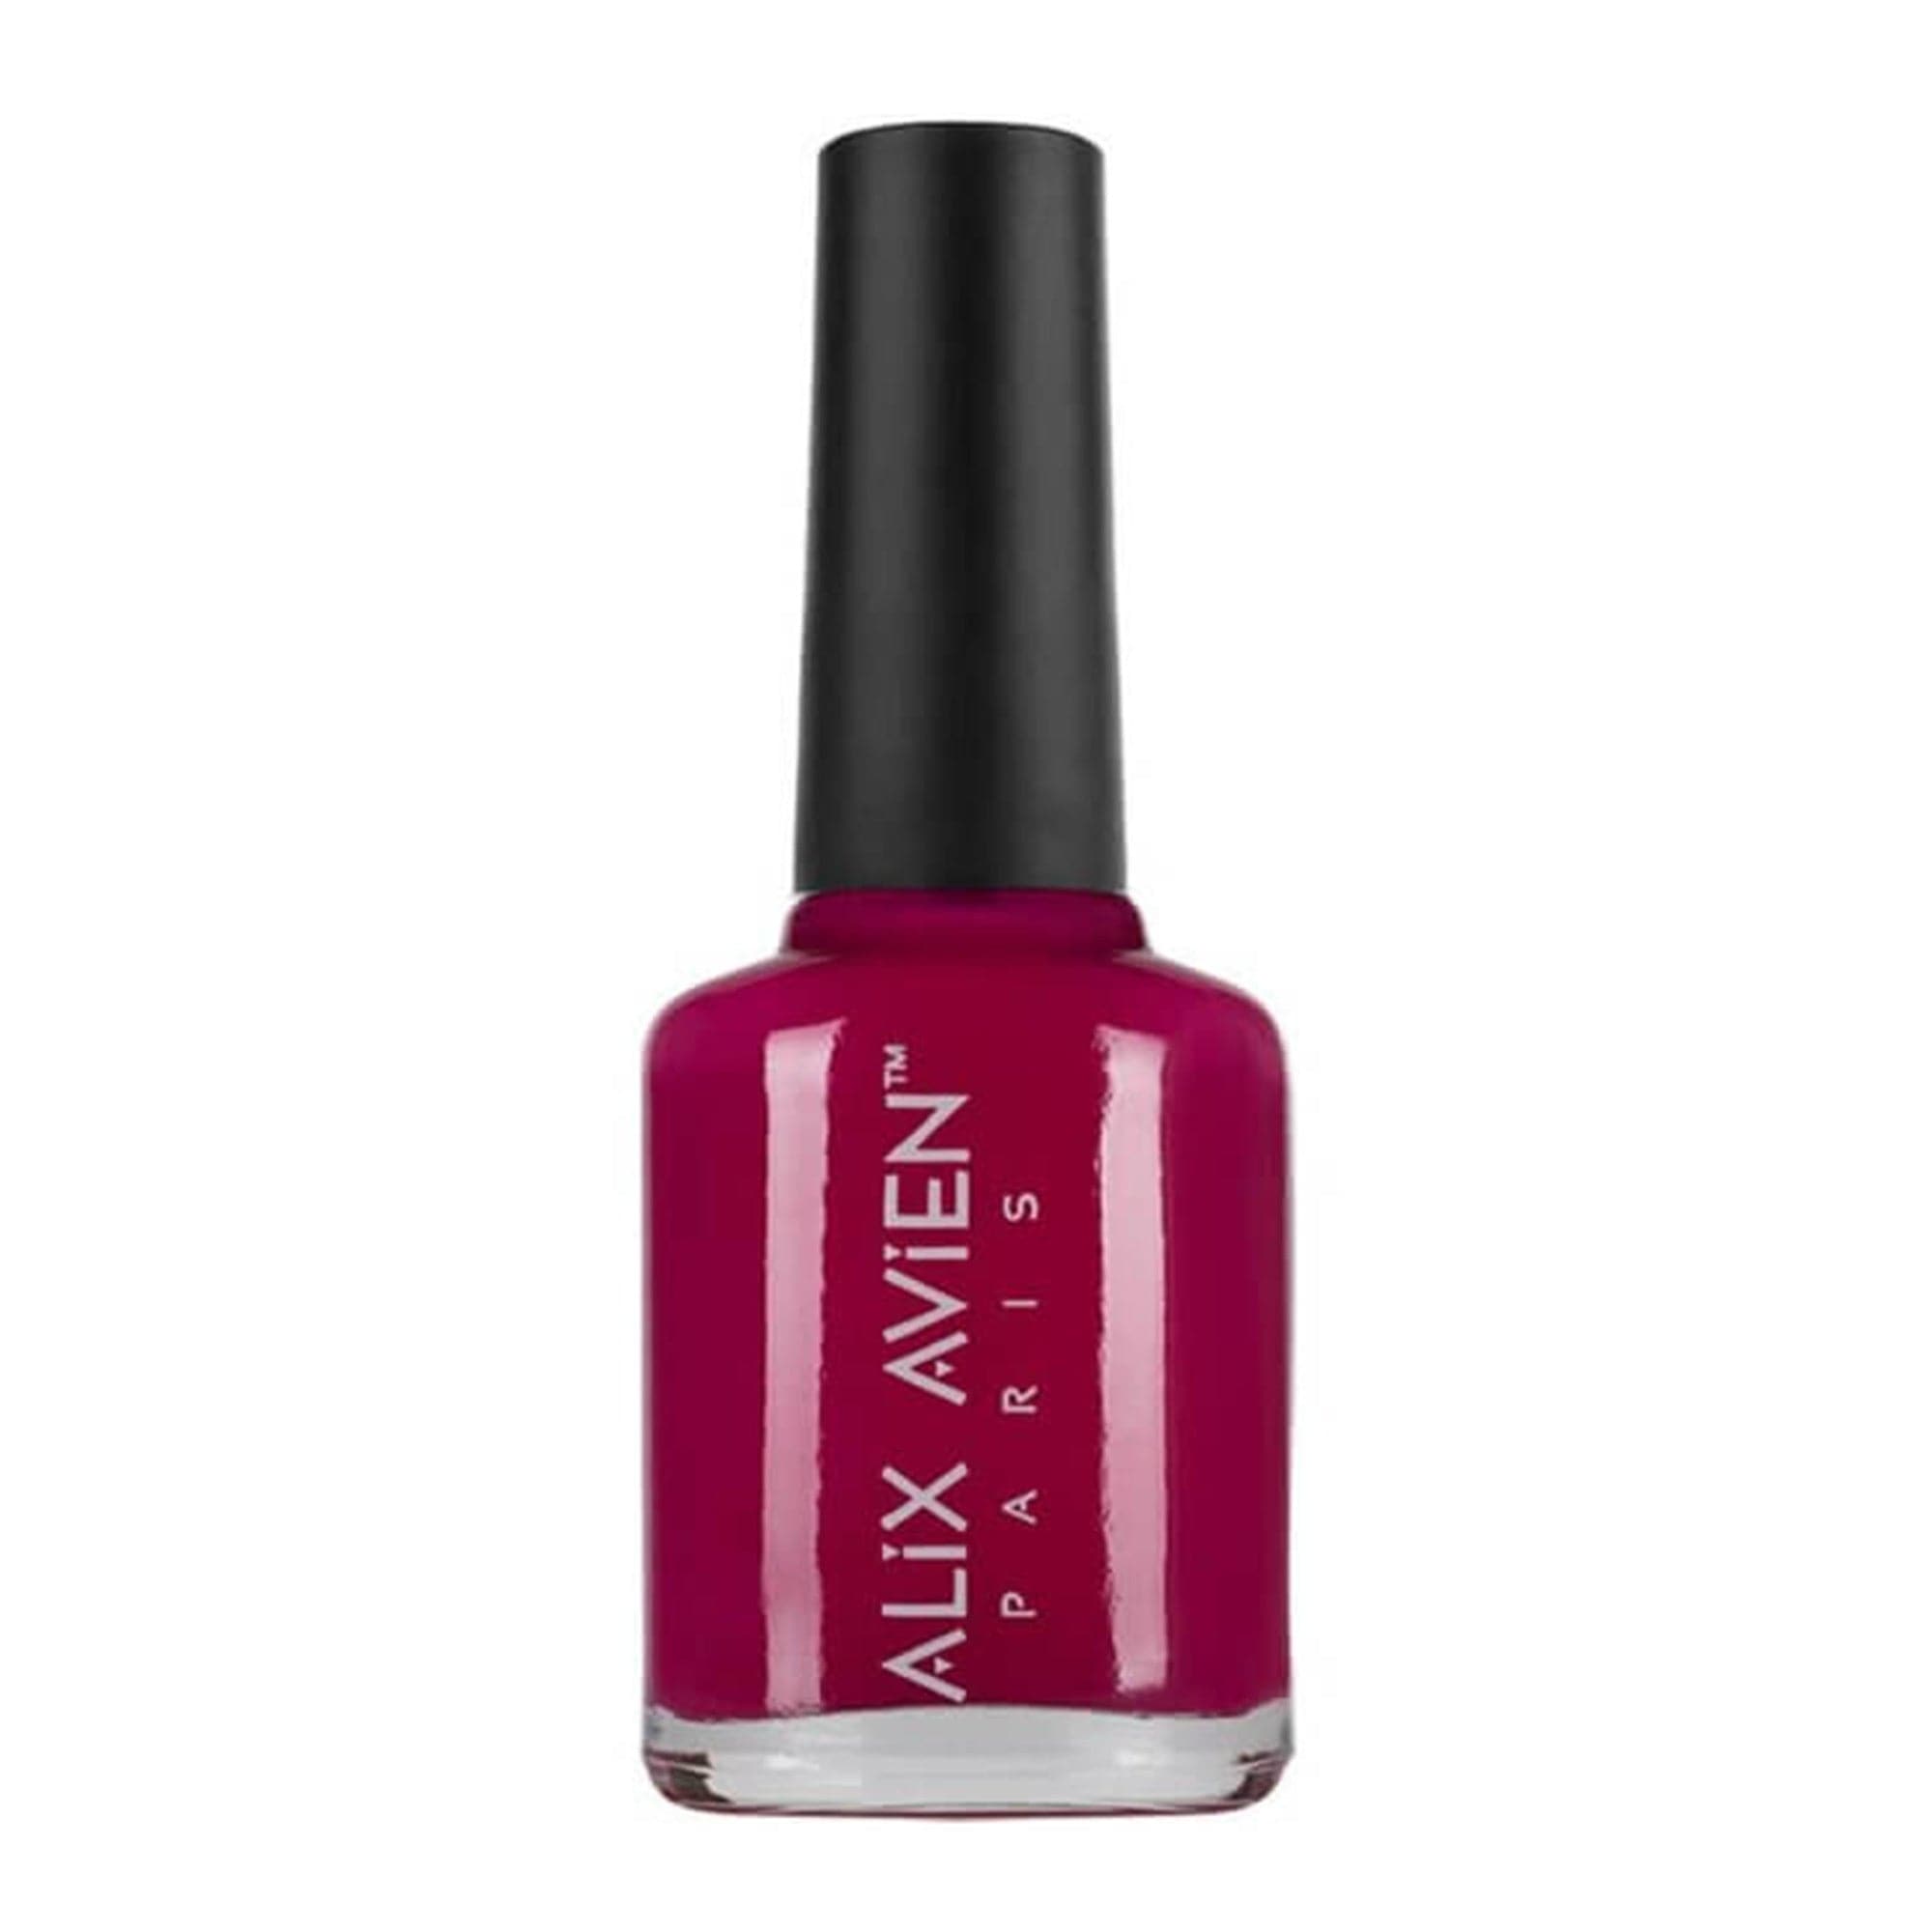 Alix Avien - Nail Polish No.18 (Hot Pink)